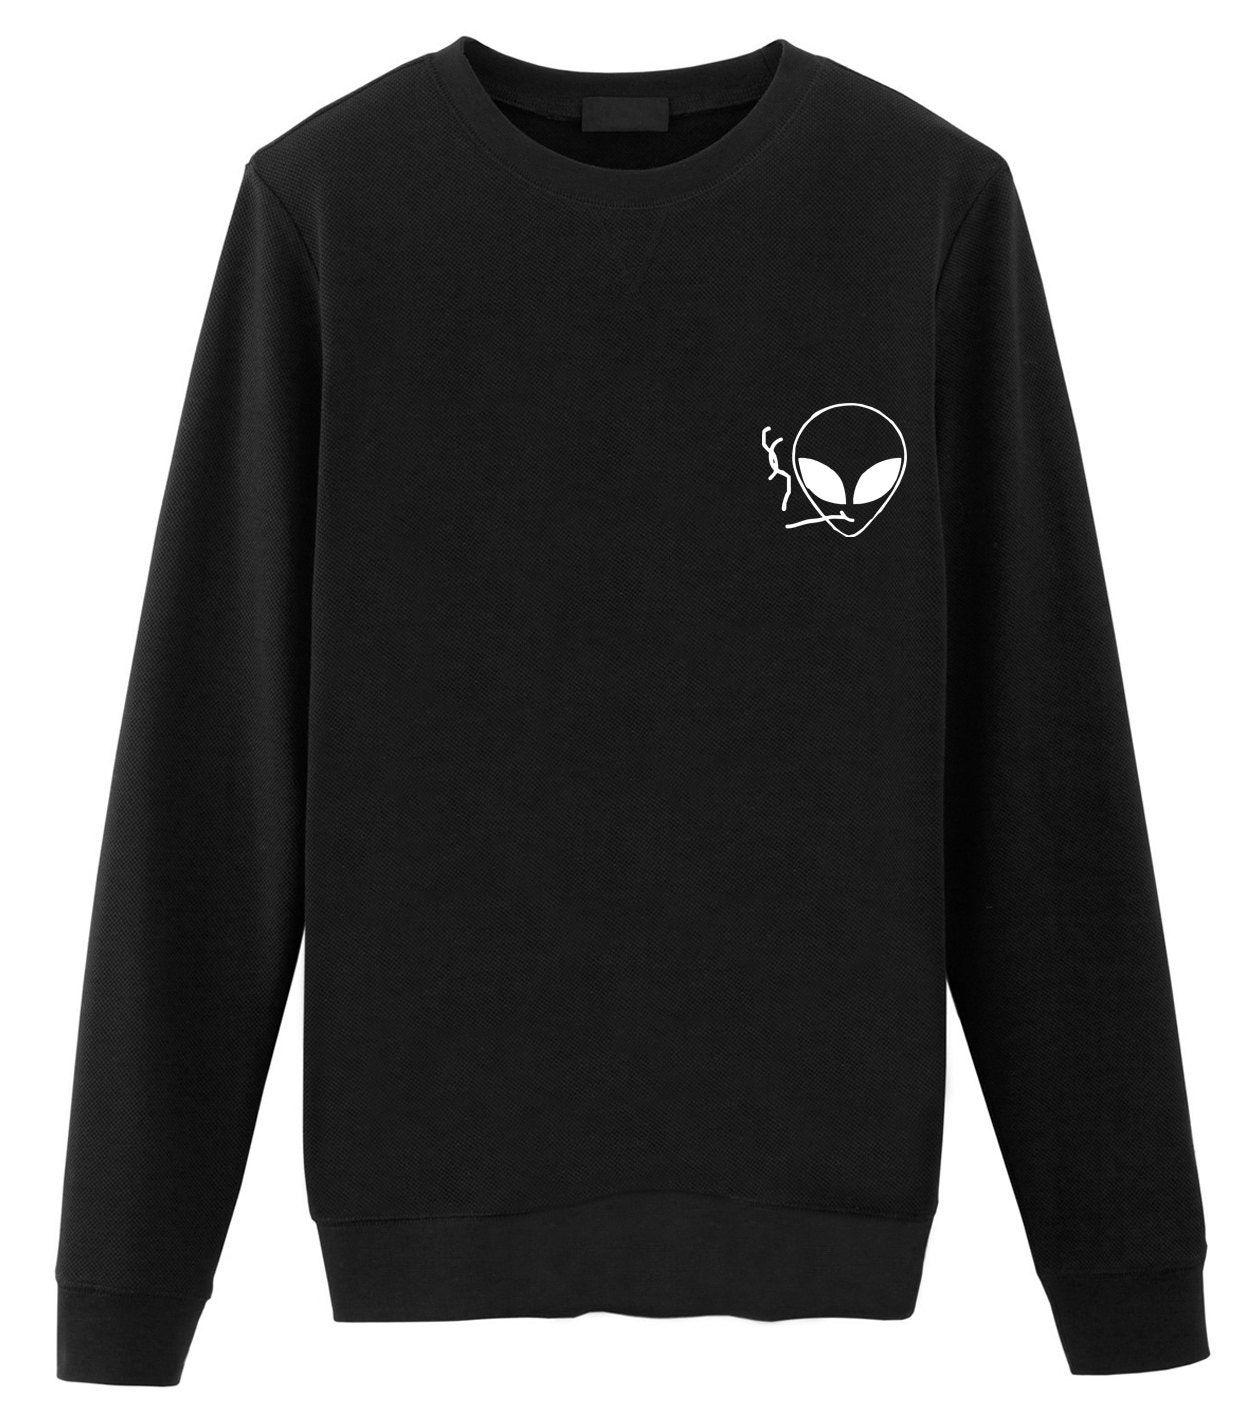 Smoking Alien Sweater Tumblr Sweatshirts sweater Grunge